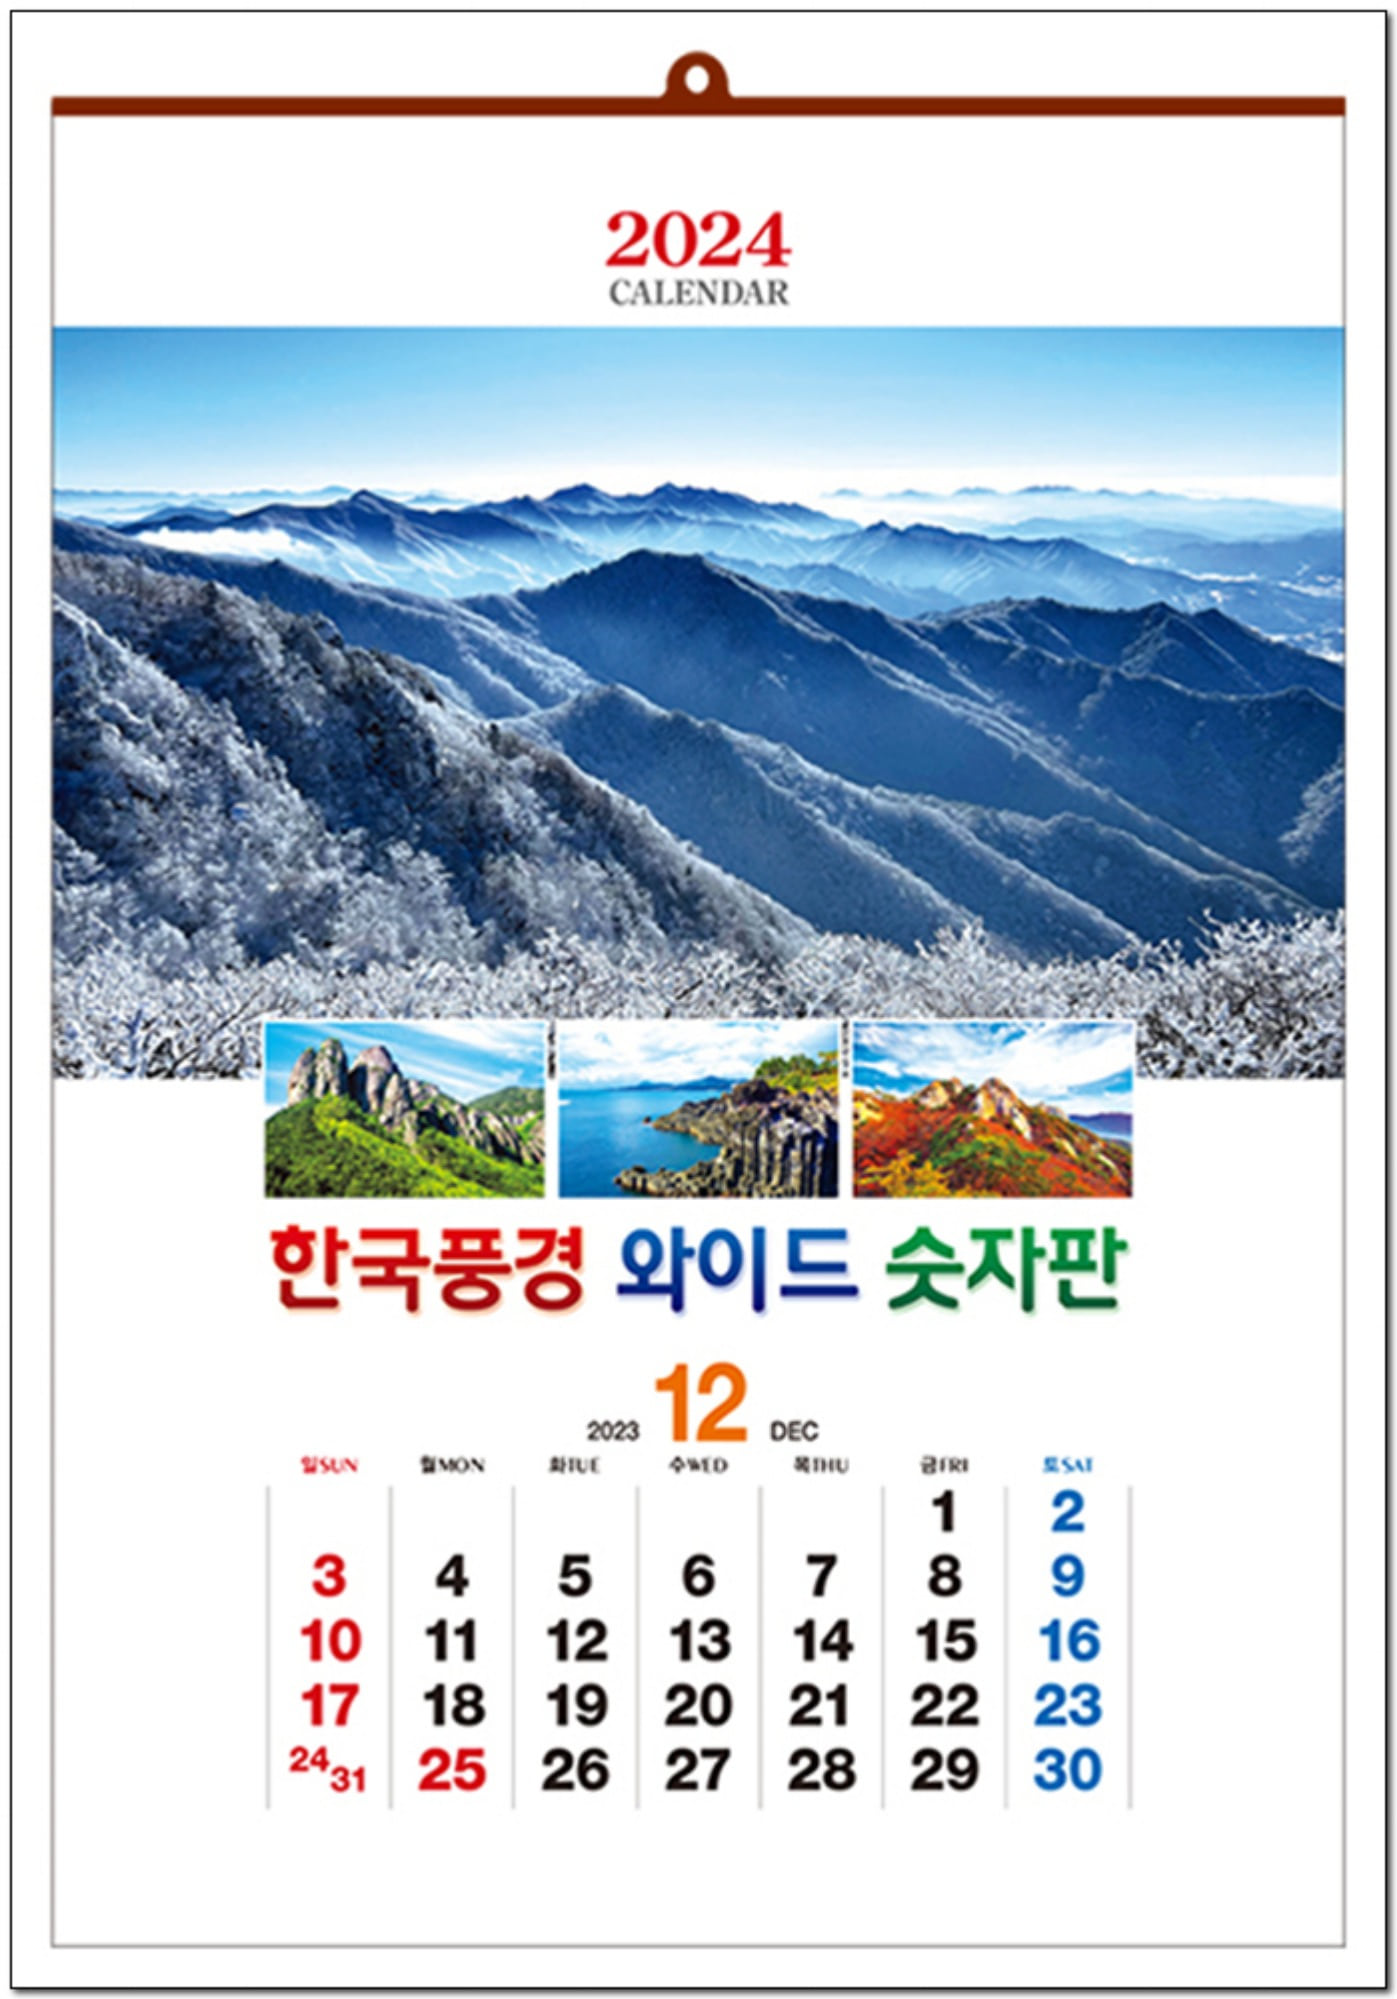 3-601 한국풍경 와이드 숫자판(모조)